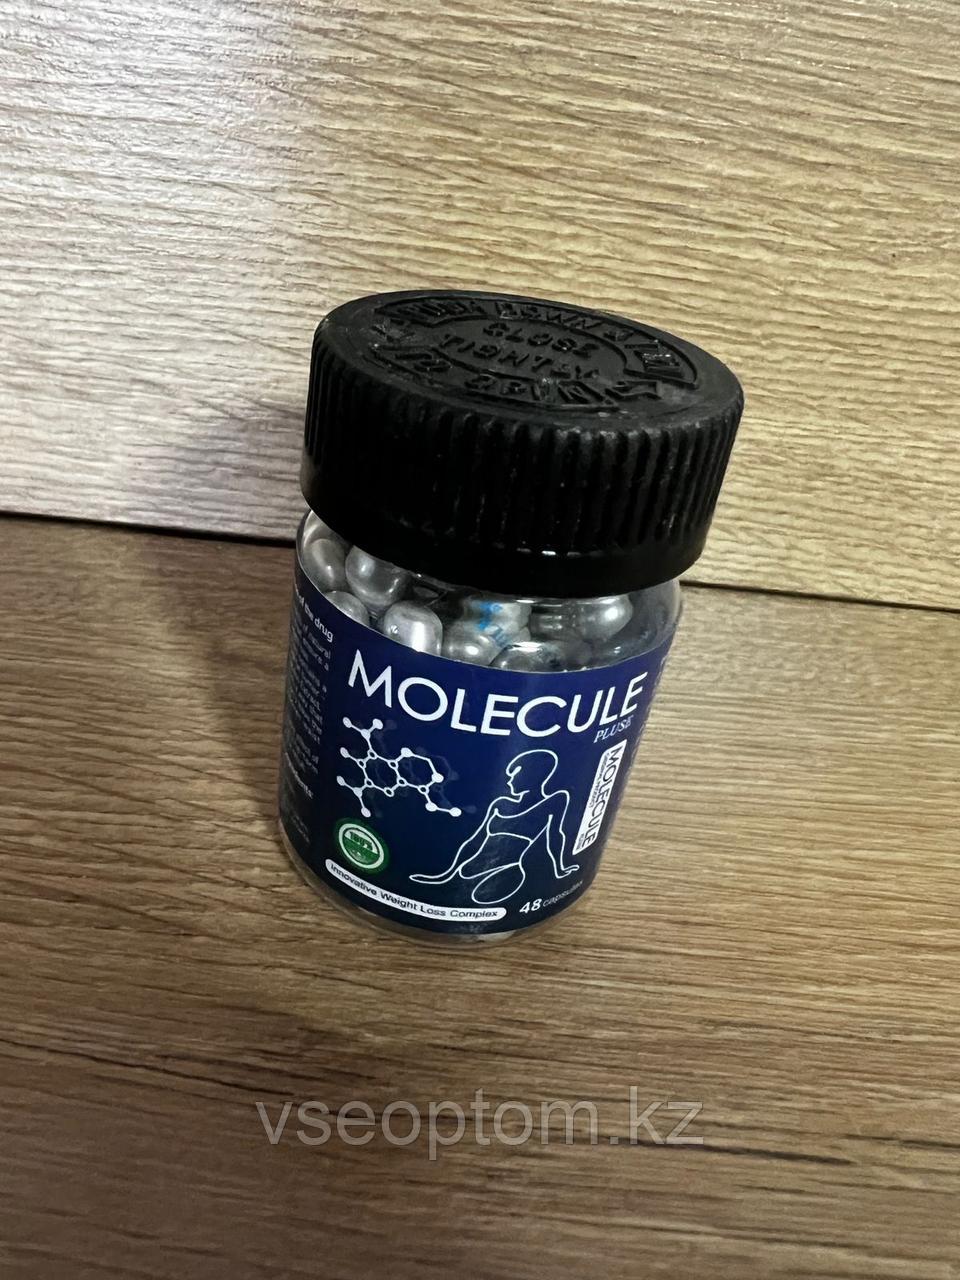 Molecule Plus ( Молекула Плюс ) в банке капсулы для похудения 48 капсул